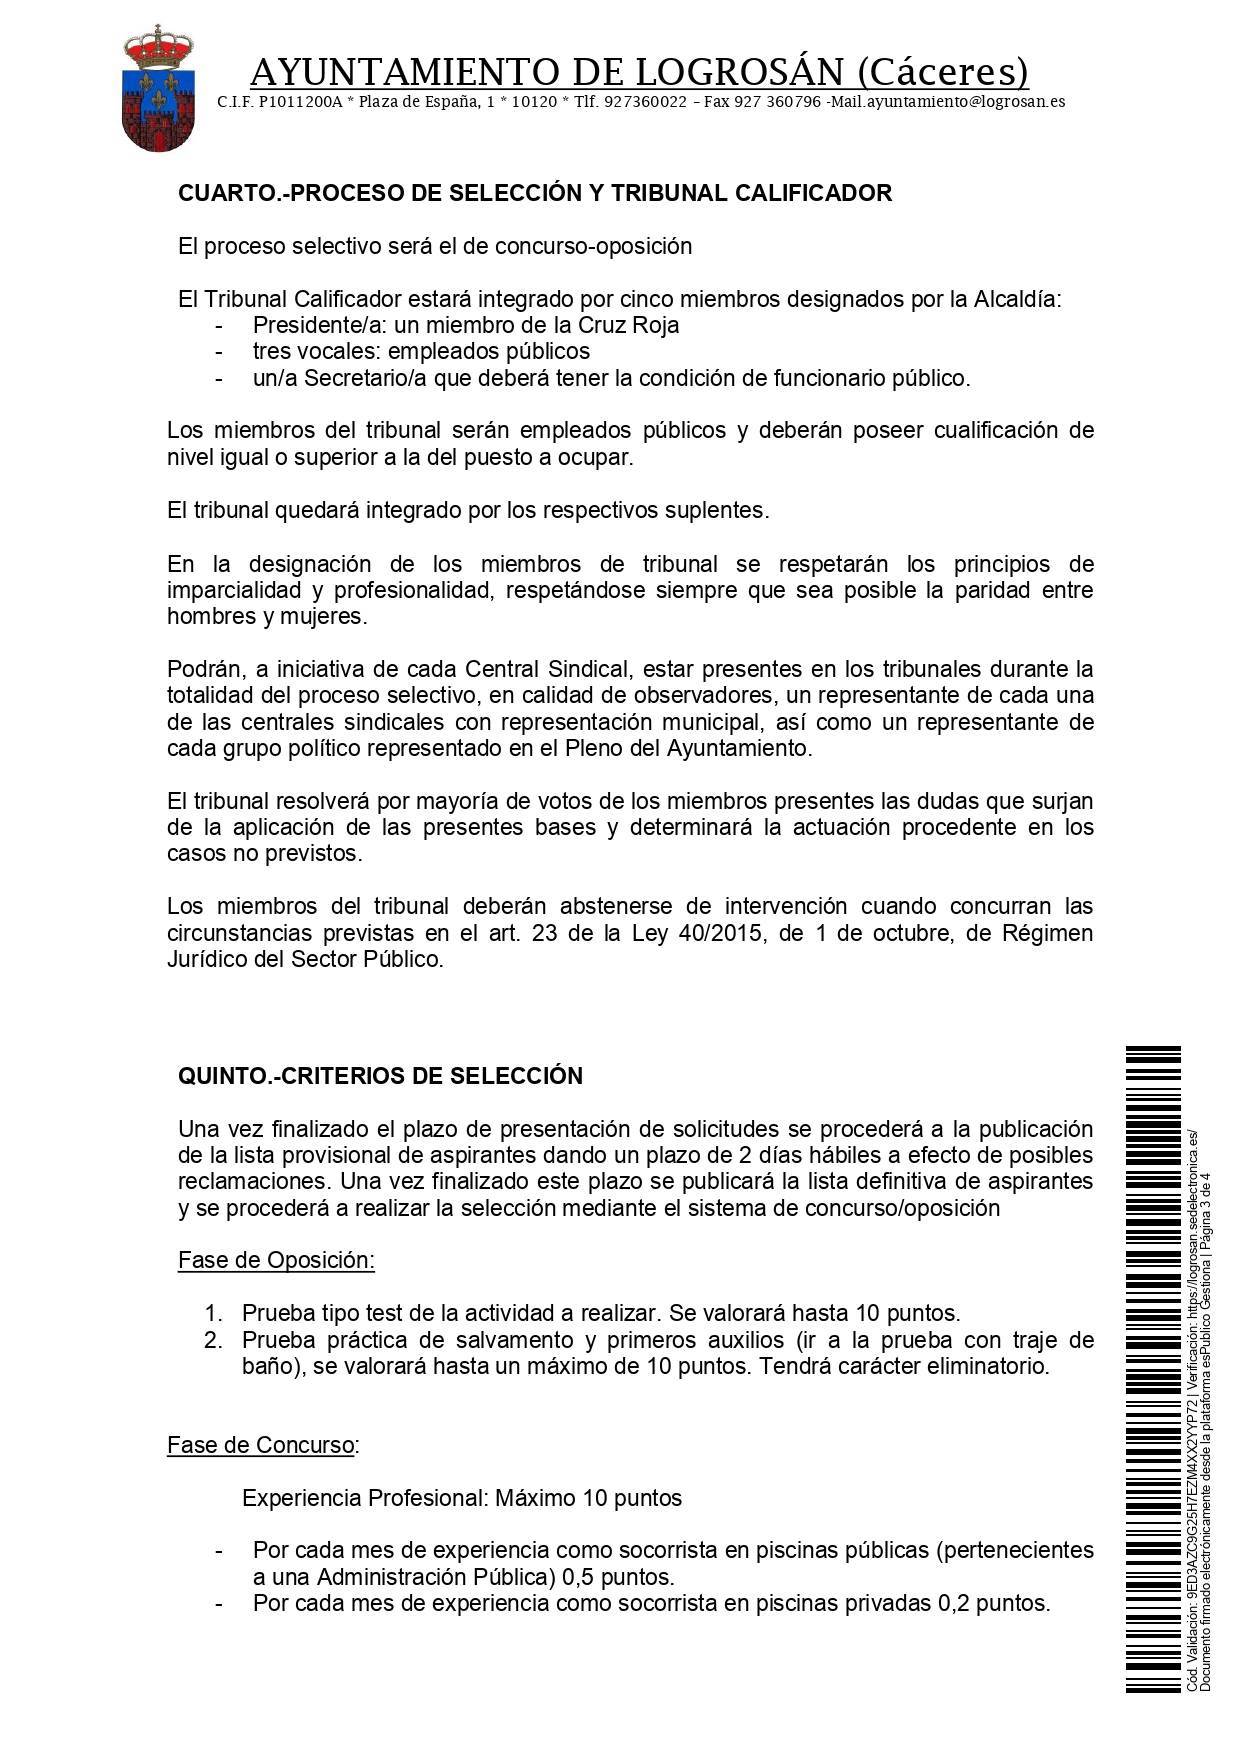 4 socorristas (2021) - Logrosán (Cáceres) 3